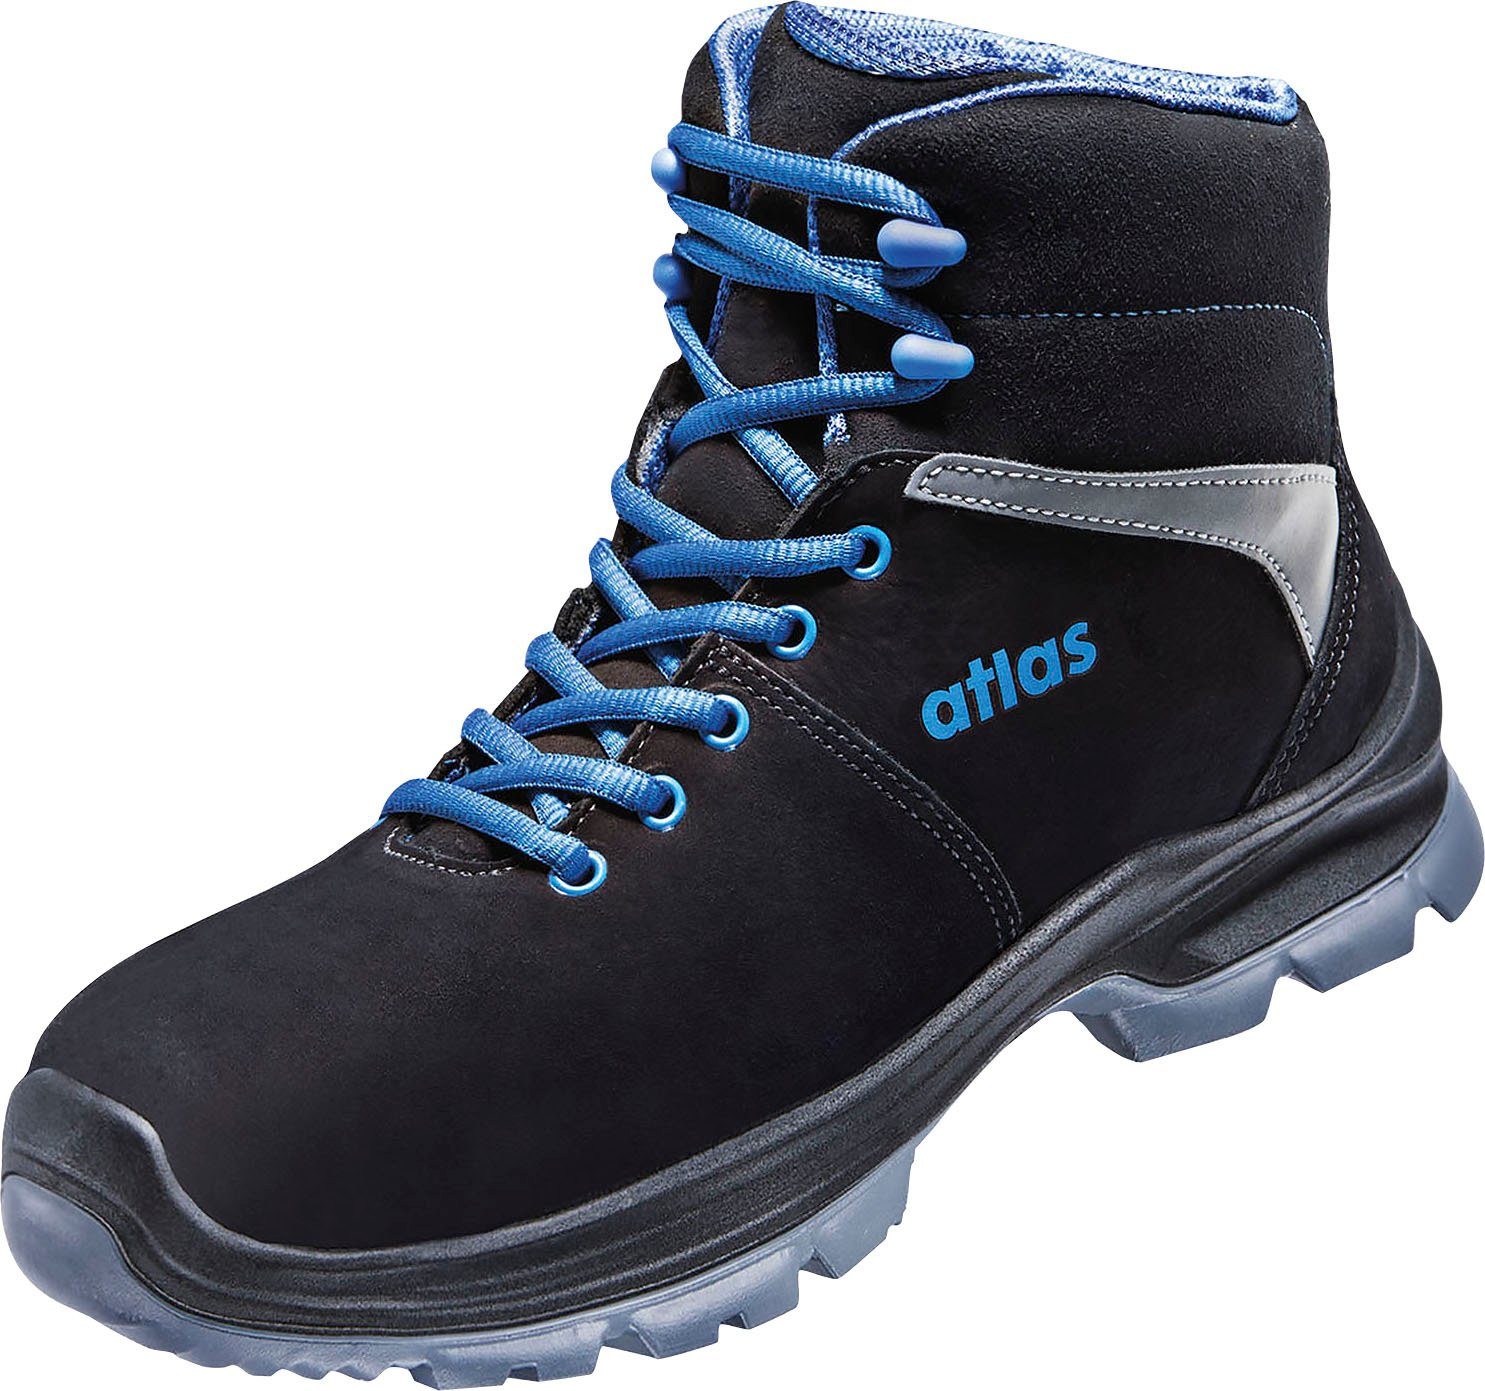 Atlas Schuhe SL 80 ESD S2 W10 Sicherheitsstiefel Sicherheitsklasse S2, MPU  Light-Sohlentechnologie,öl-, benzin- und säurebeständig, antistatisch